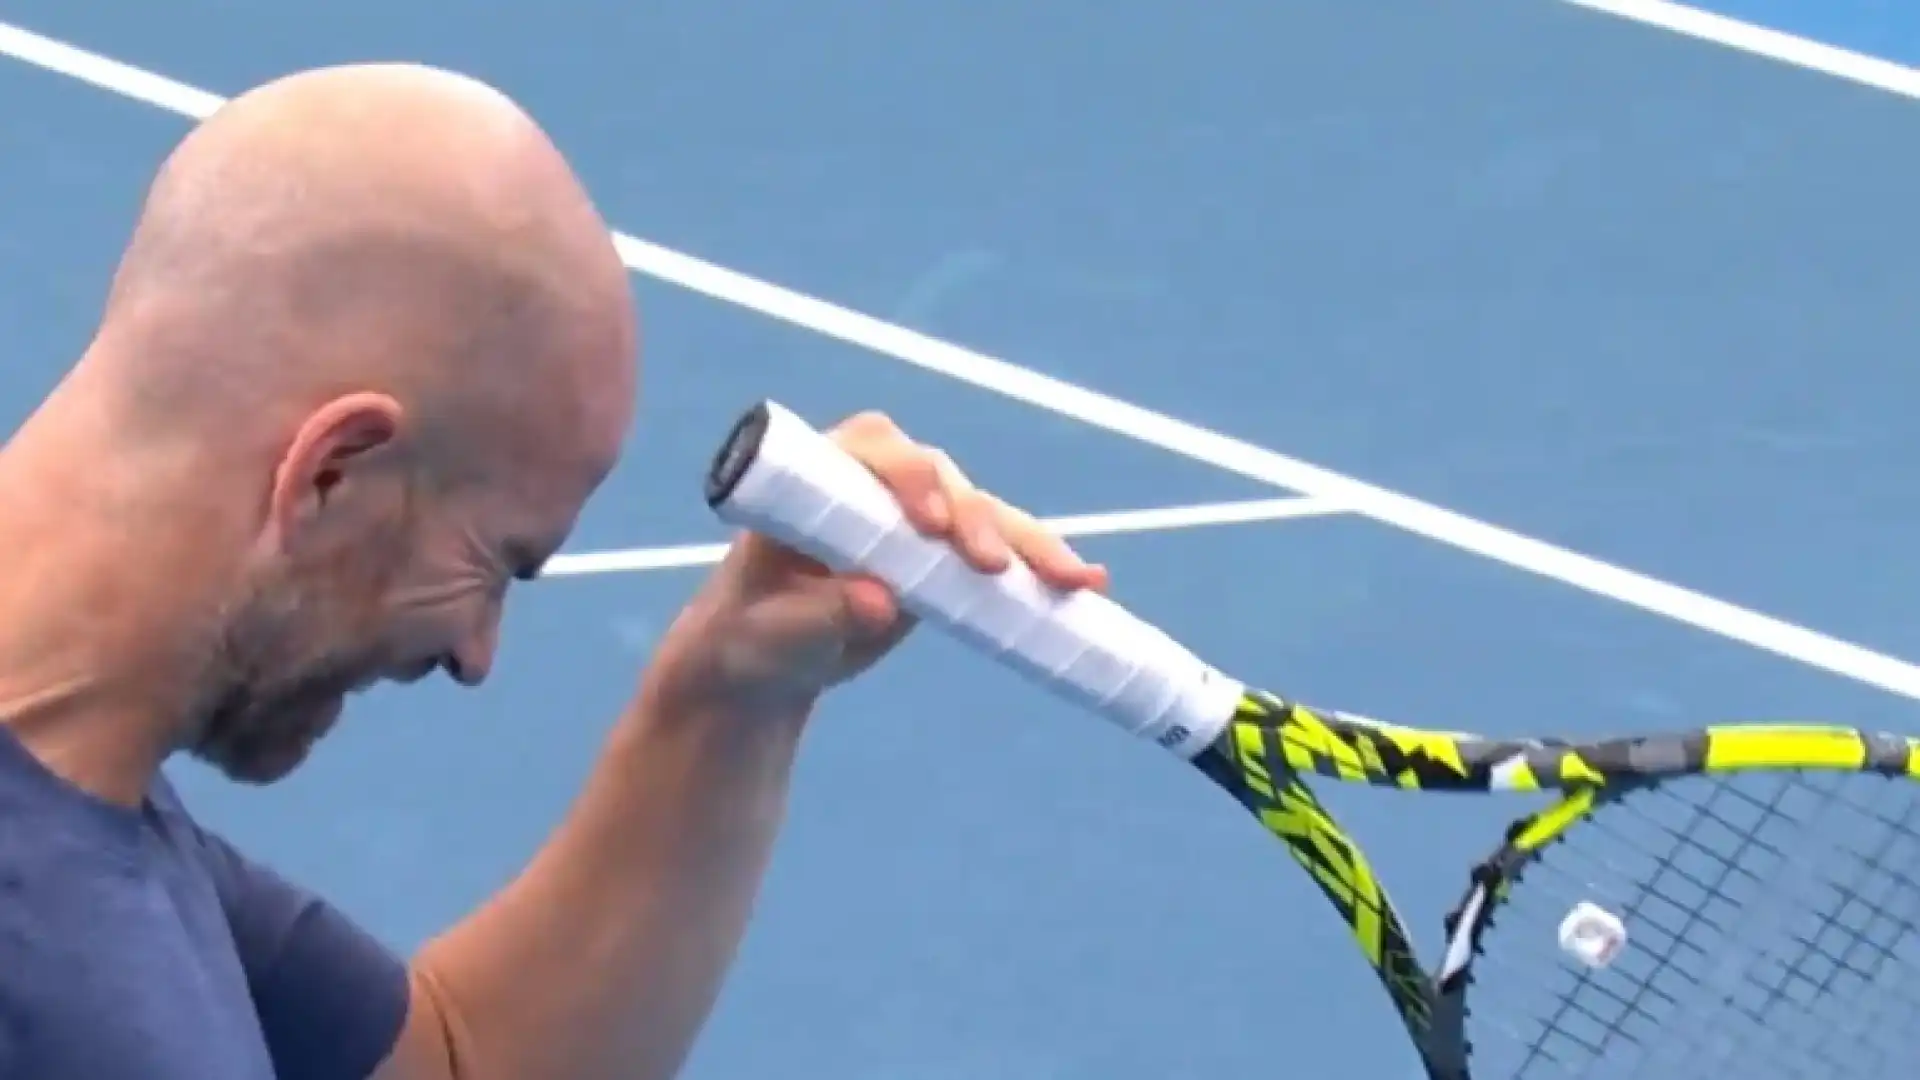 Il tennista francese si è colpito ripetutamente alla fronte con il manico della racchetta da tennis, procurandosi un taglio